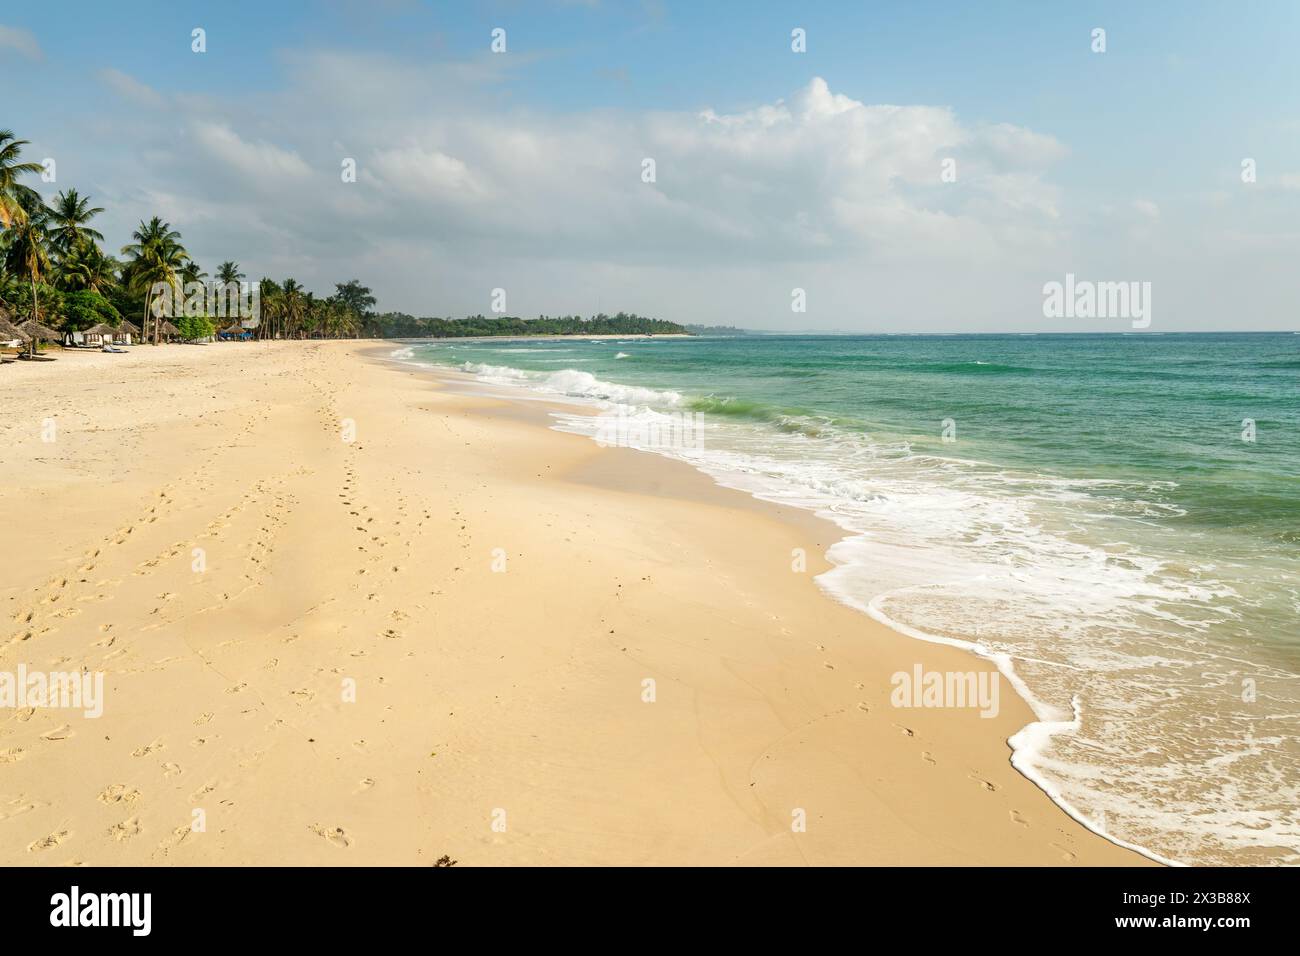 Splendida immagine di sfondo della spiaggia tropicale. Sole estivo sull'oceano. Cielo blu con nuvole chiare, oceano turchese con surf e sabbia limpida. Danno Foto Stock